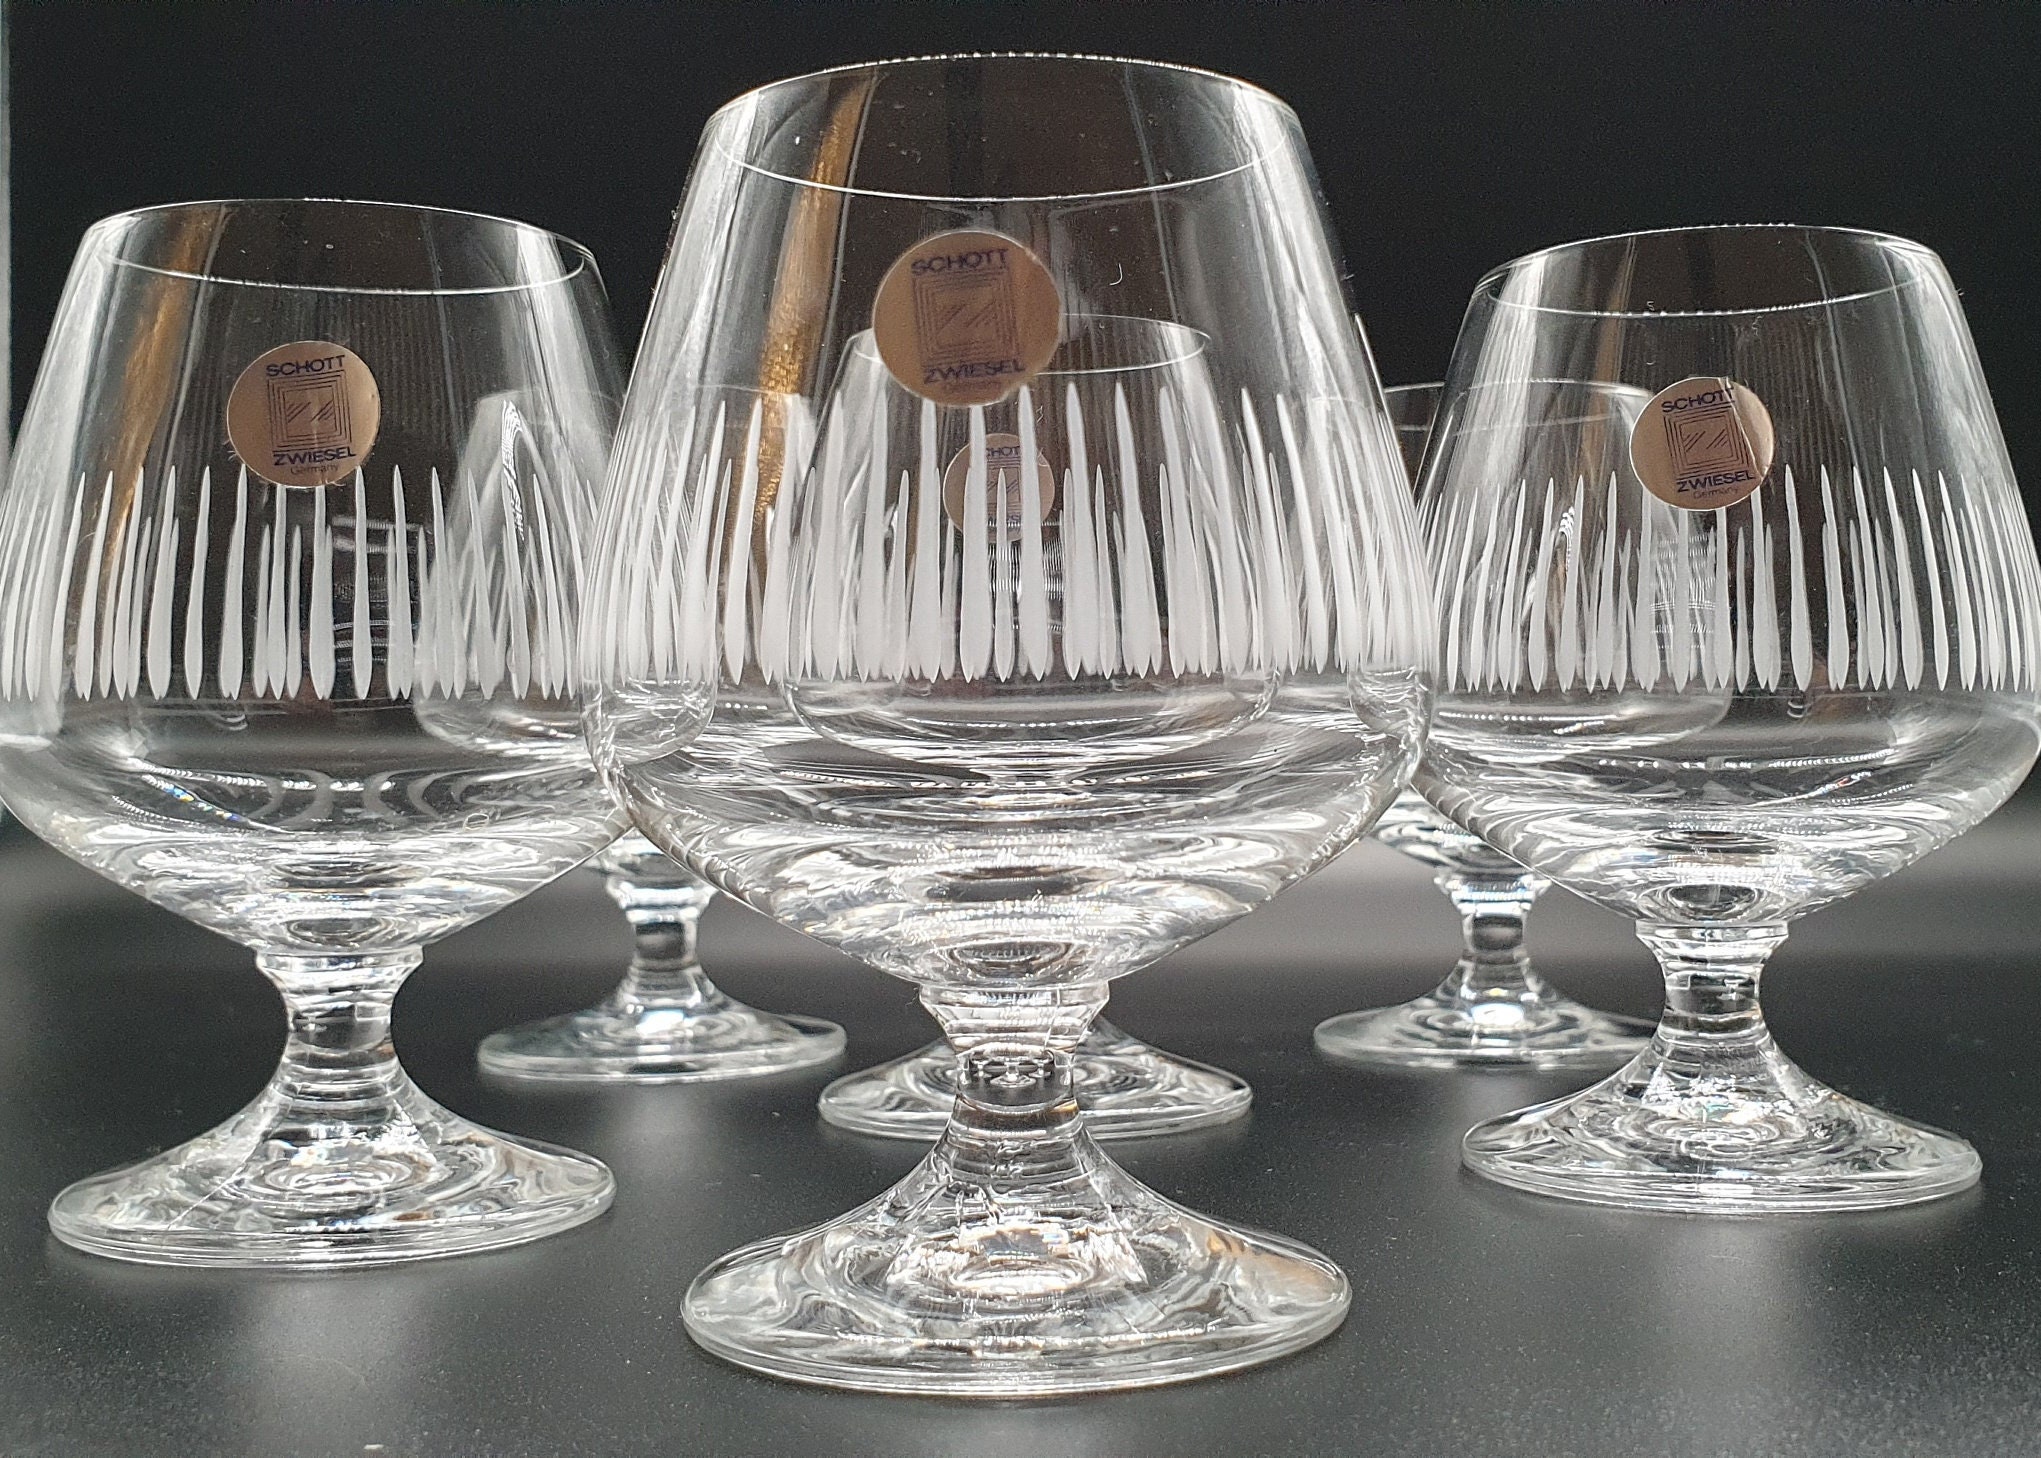 Arrangement Leidingen onderhoud Set of 6 Schott Zwiesel Crystal Cognac Glasses Made in - Etsy